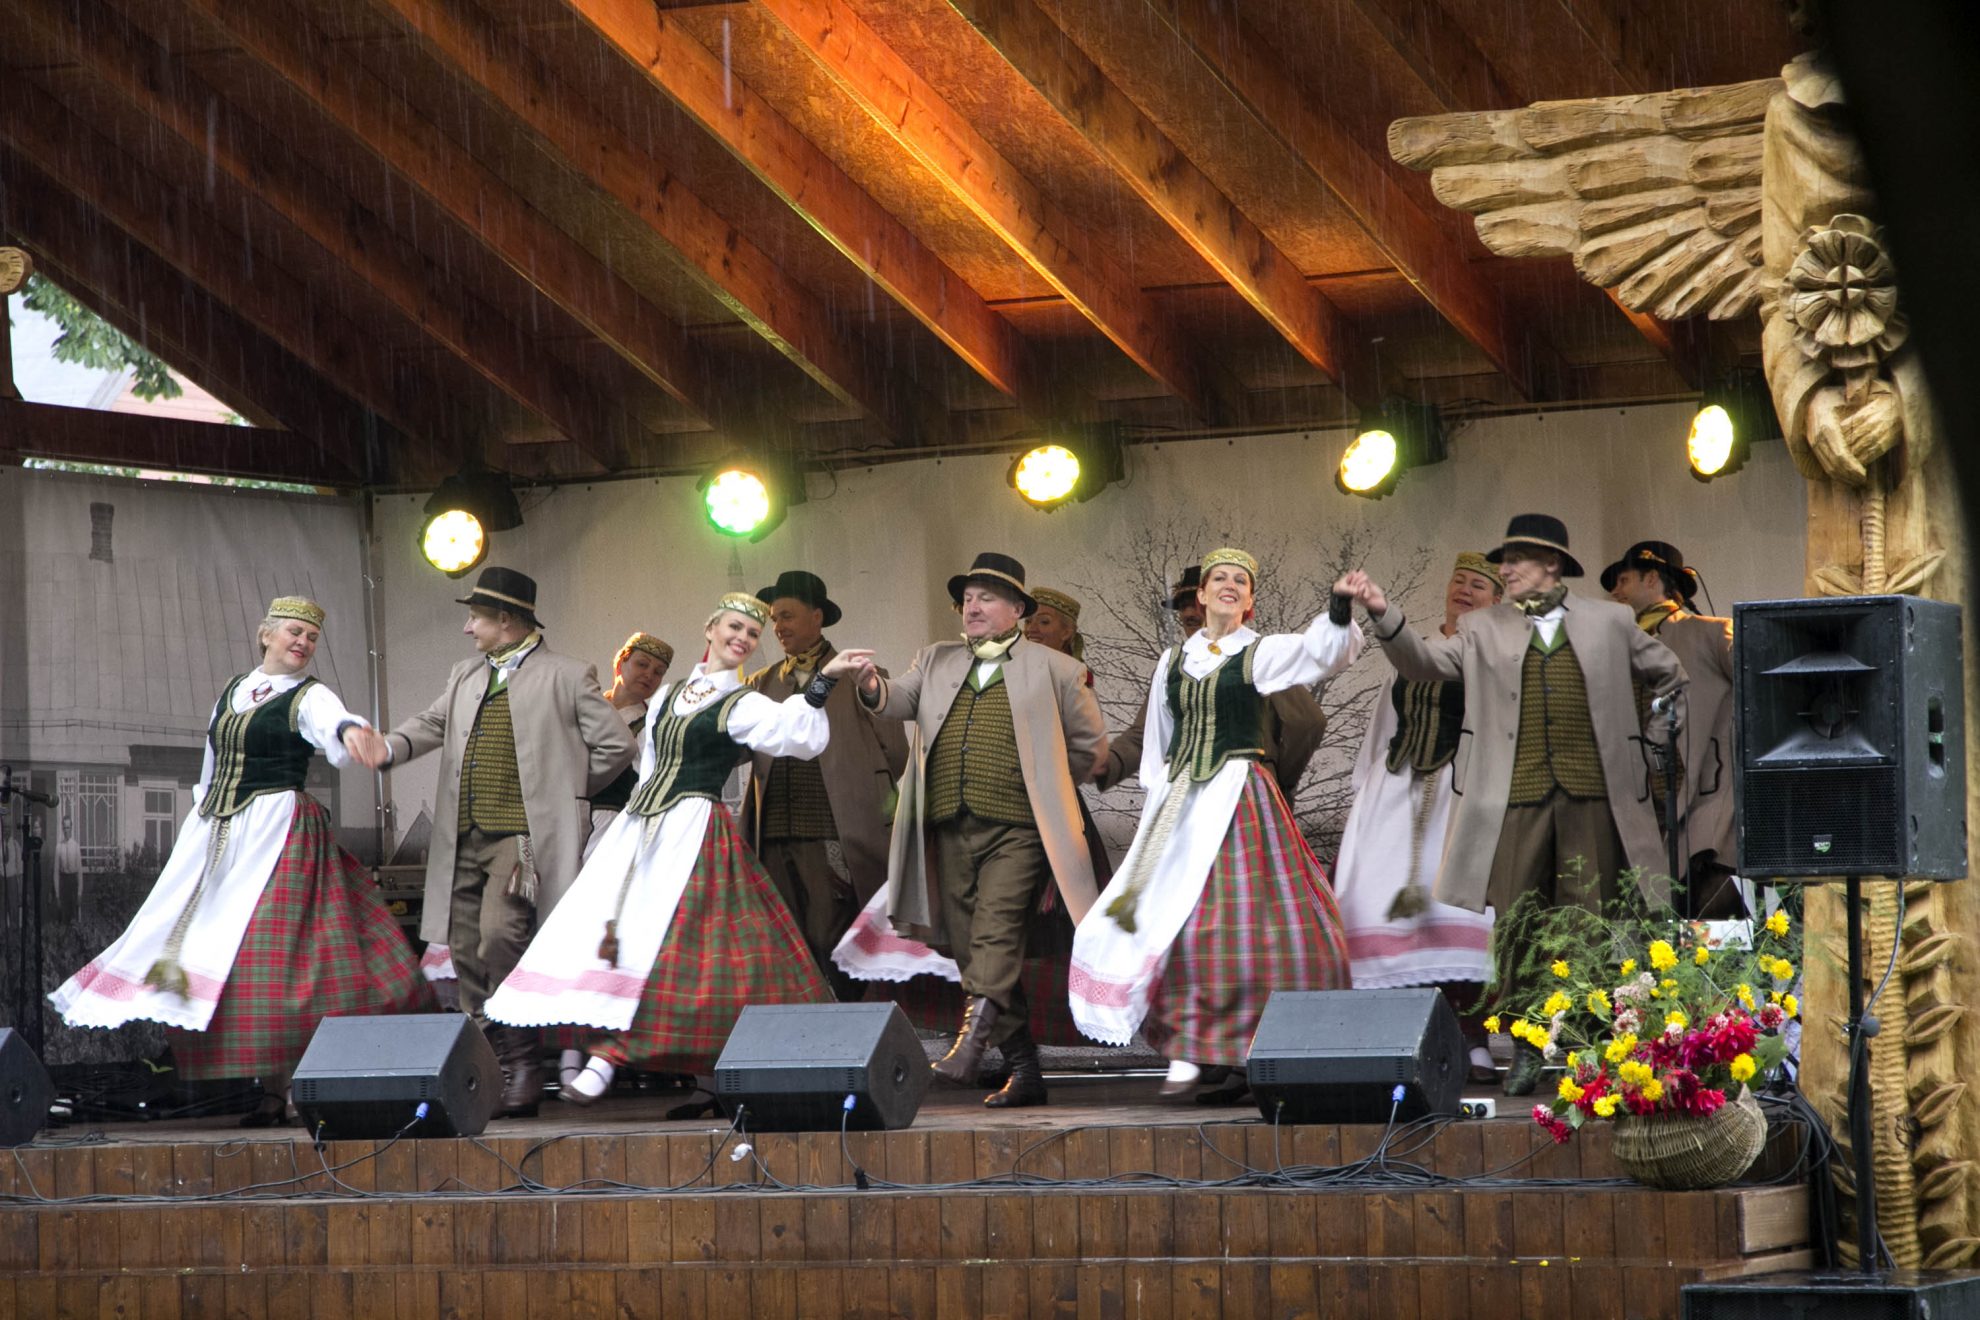 Jau 10-ąjį kartą Miežiškių bendruomenė susibūrė į didžiausią miestelio metų renginį – Šv. Baltramiejaus atlaidus, kuriuose atsisveikinta ir su gandrais.